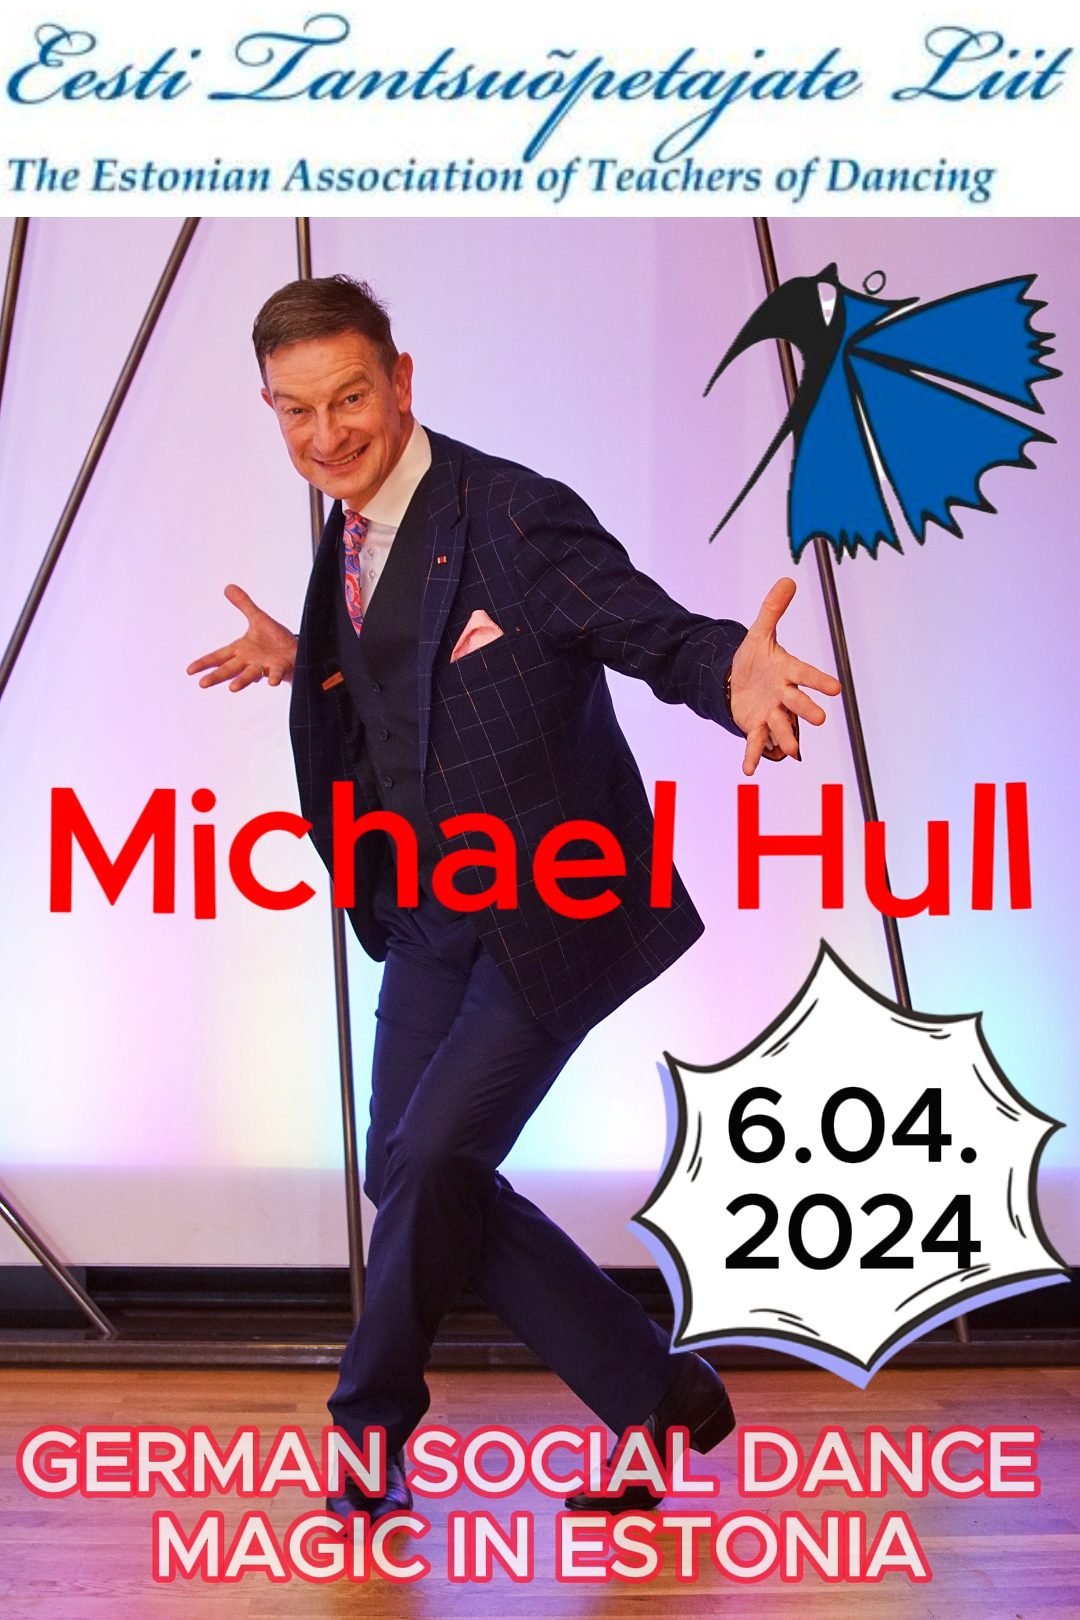 MichaelHull seminar